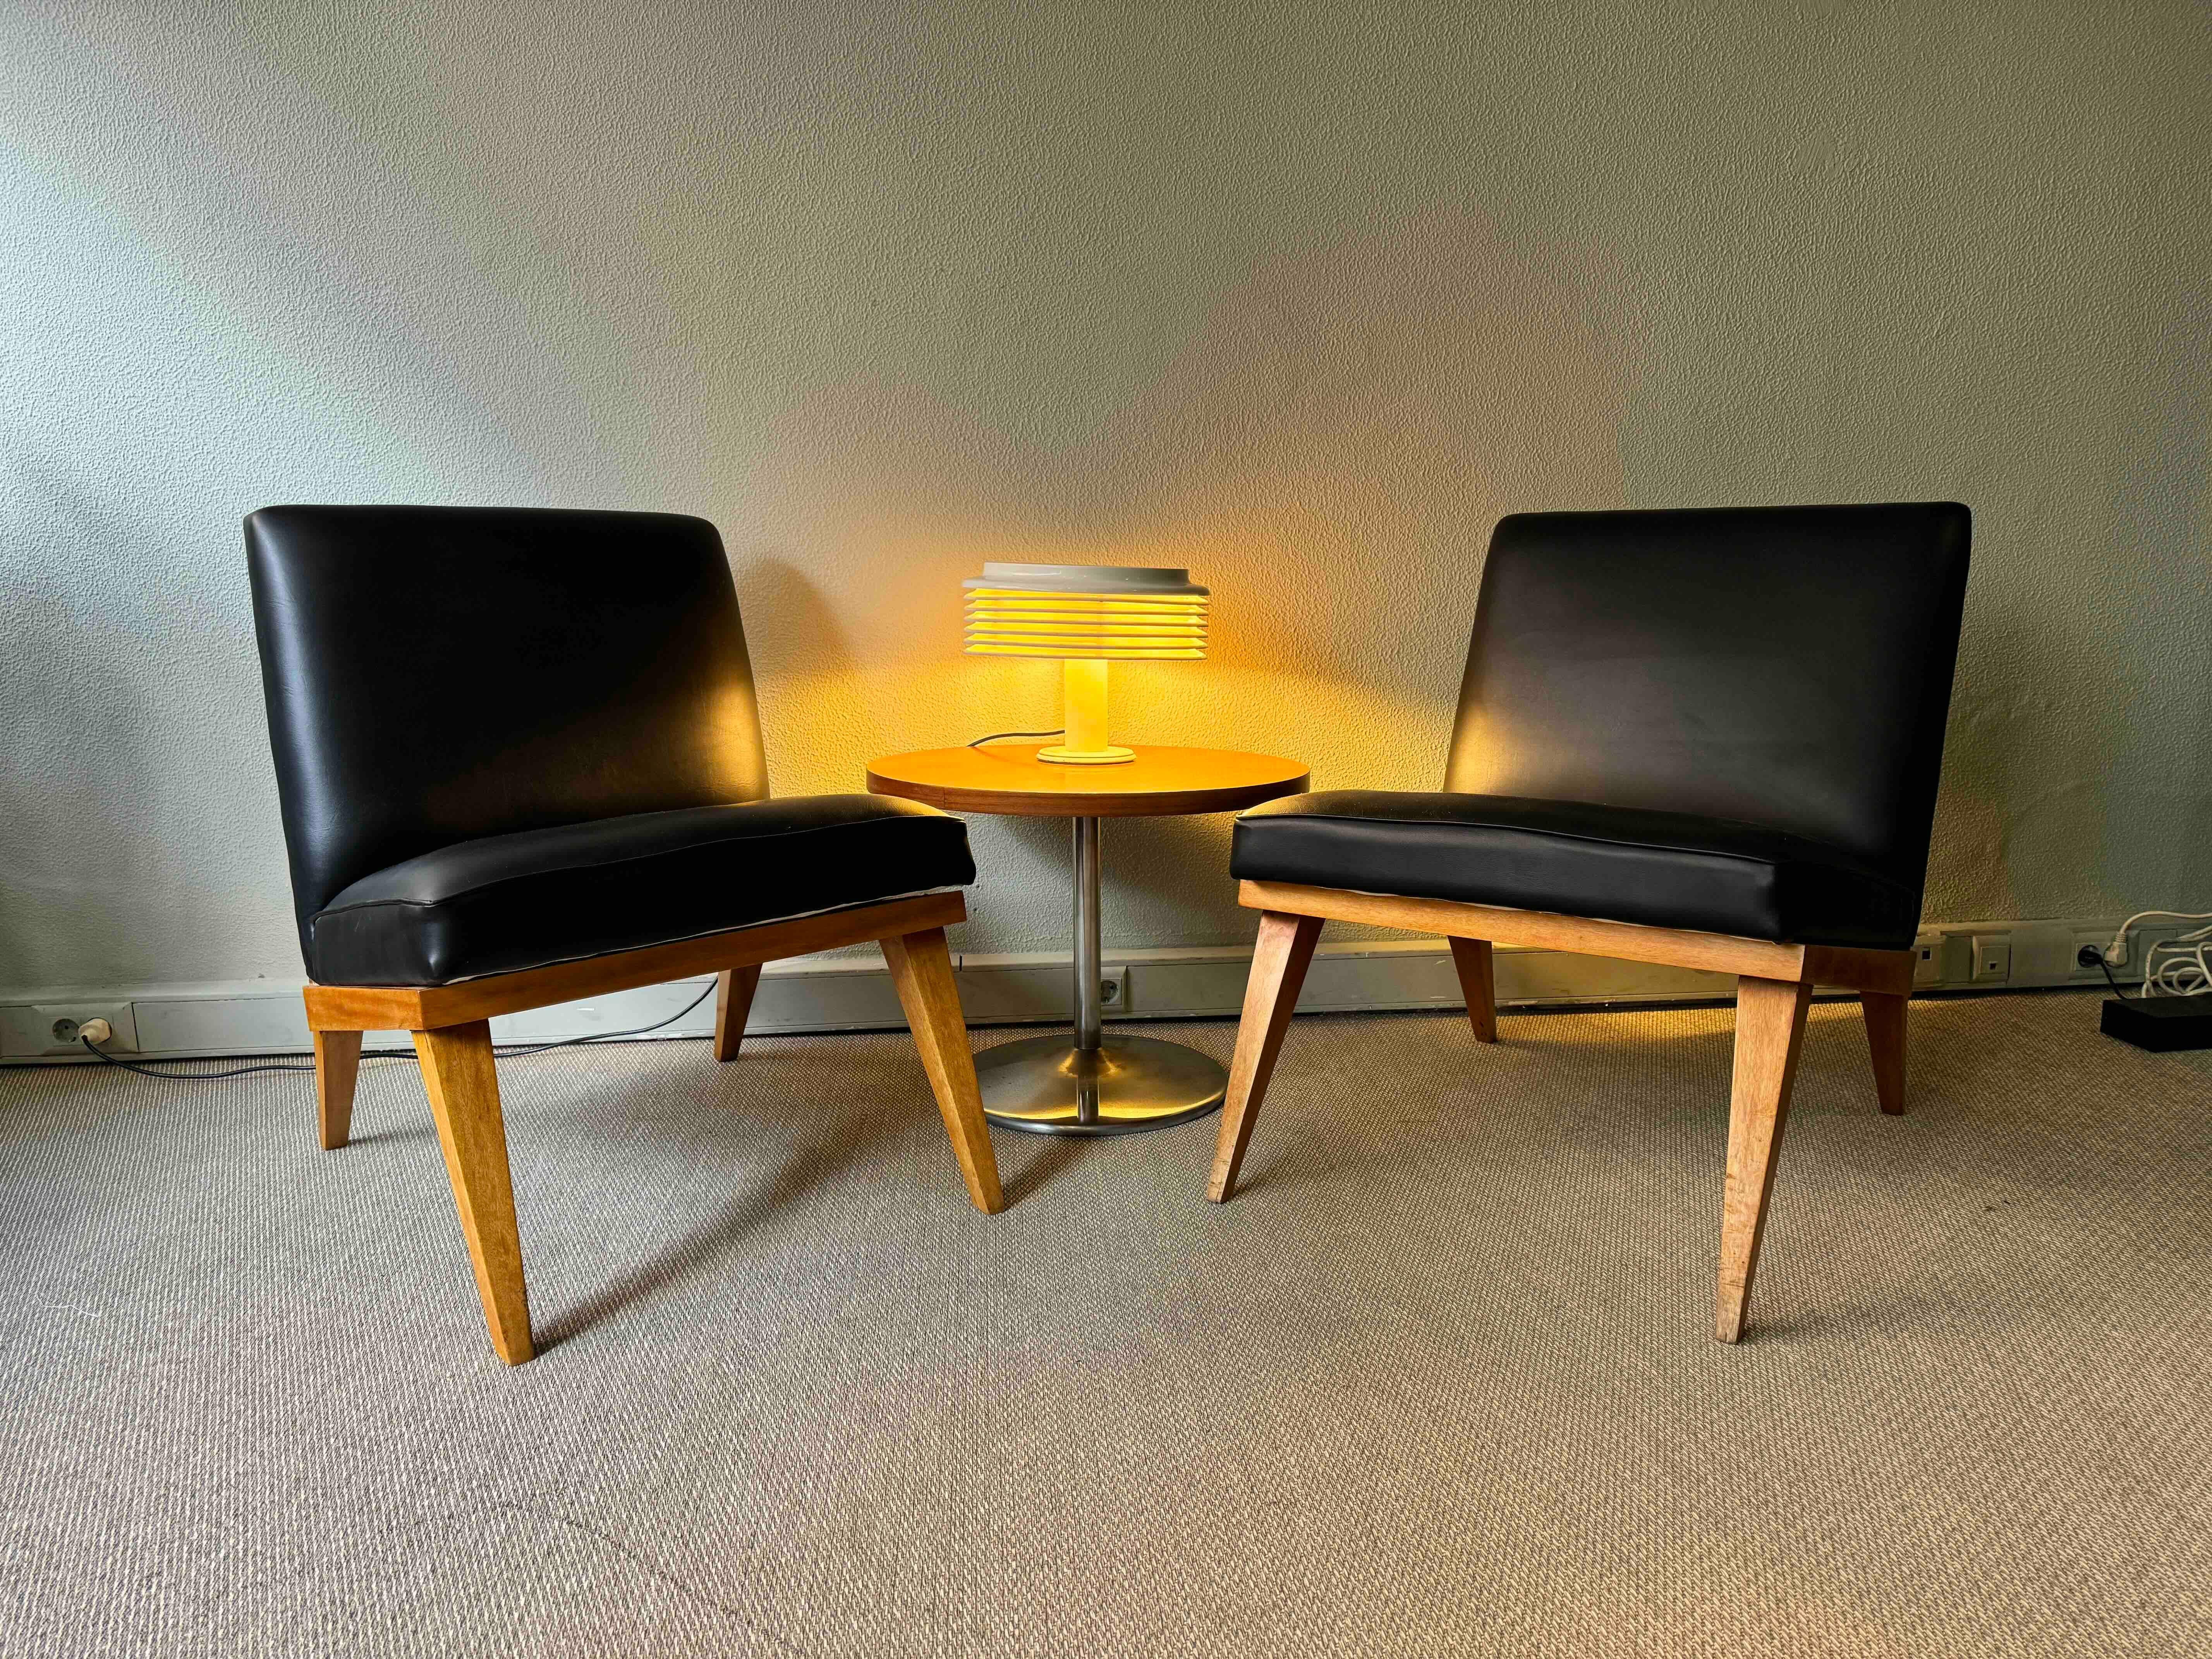 
Lassen Sie sich vom zeitlosen Charme des Mid-Century-Designs verzaubern - mit diesem bemerkenswerten Paar niedriger Stühle, inspiriert vom legendären Jens Risom Slipper Chair aus den 1950er Jahren. Was dieses Paar so einzigartig macht, ist seine